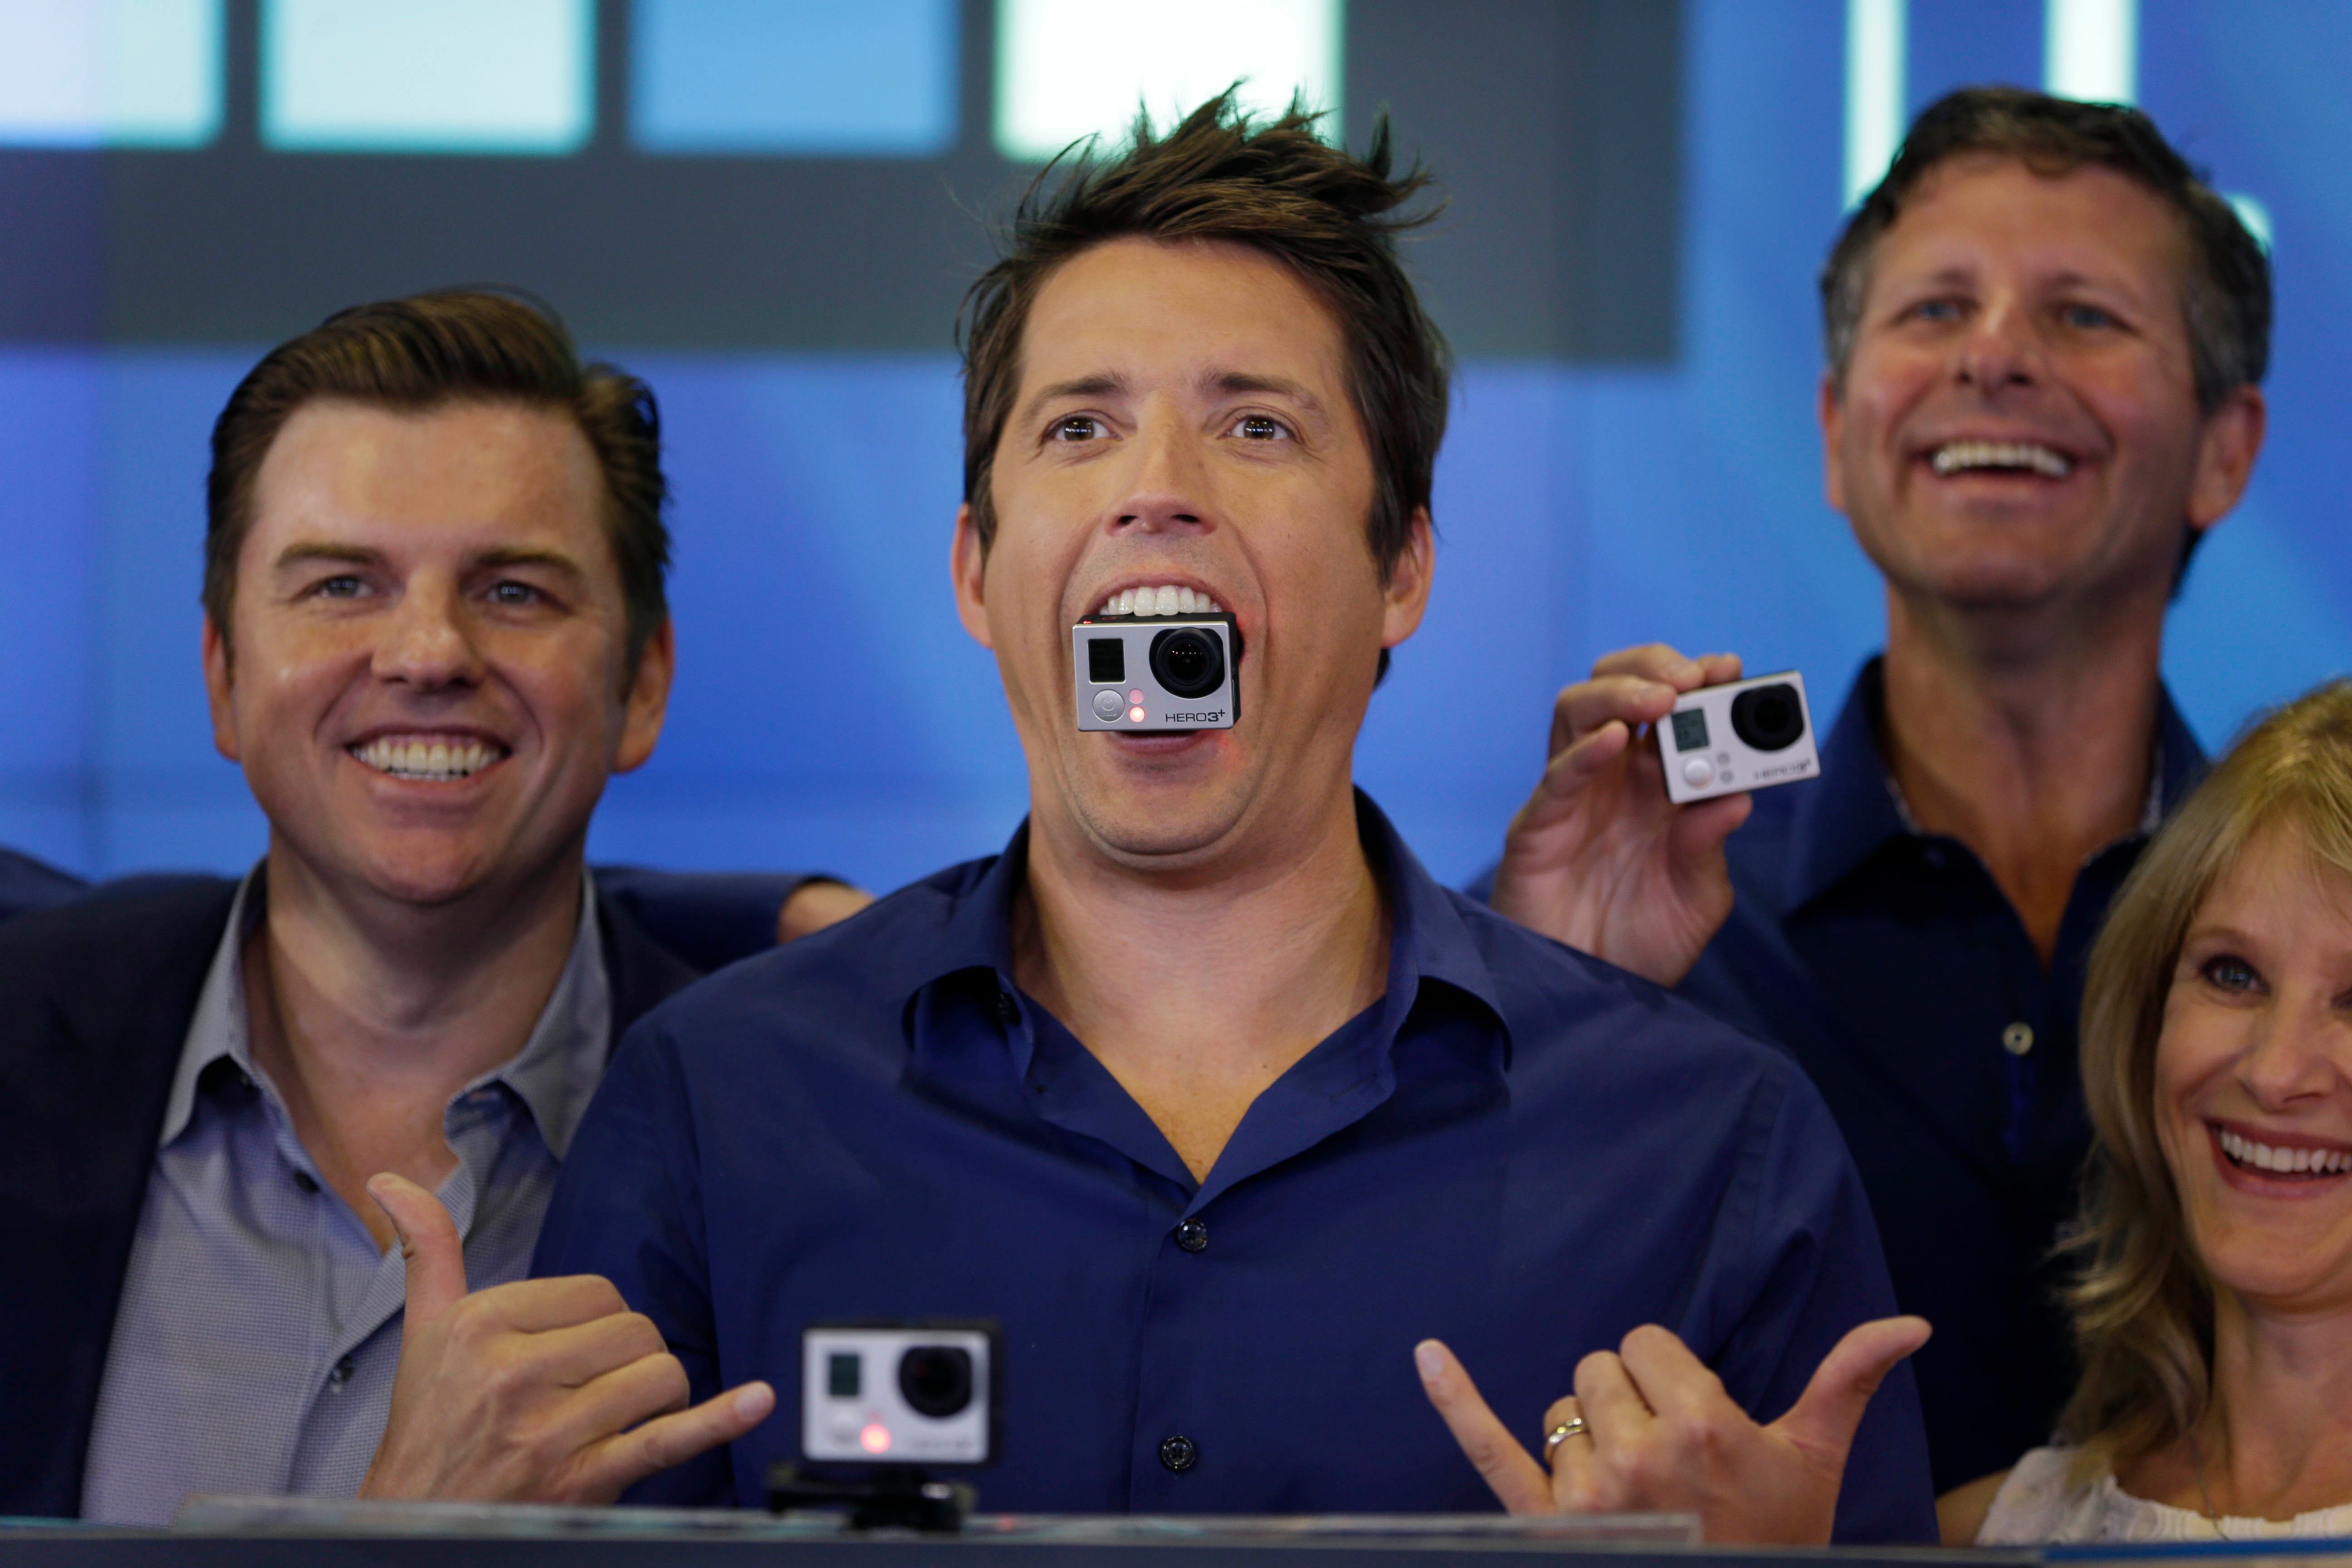 GoPro goes public on Wall Street